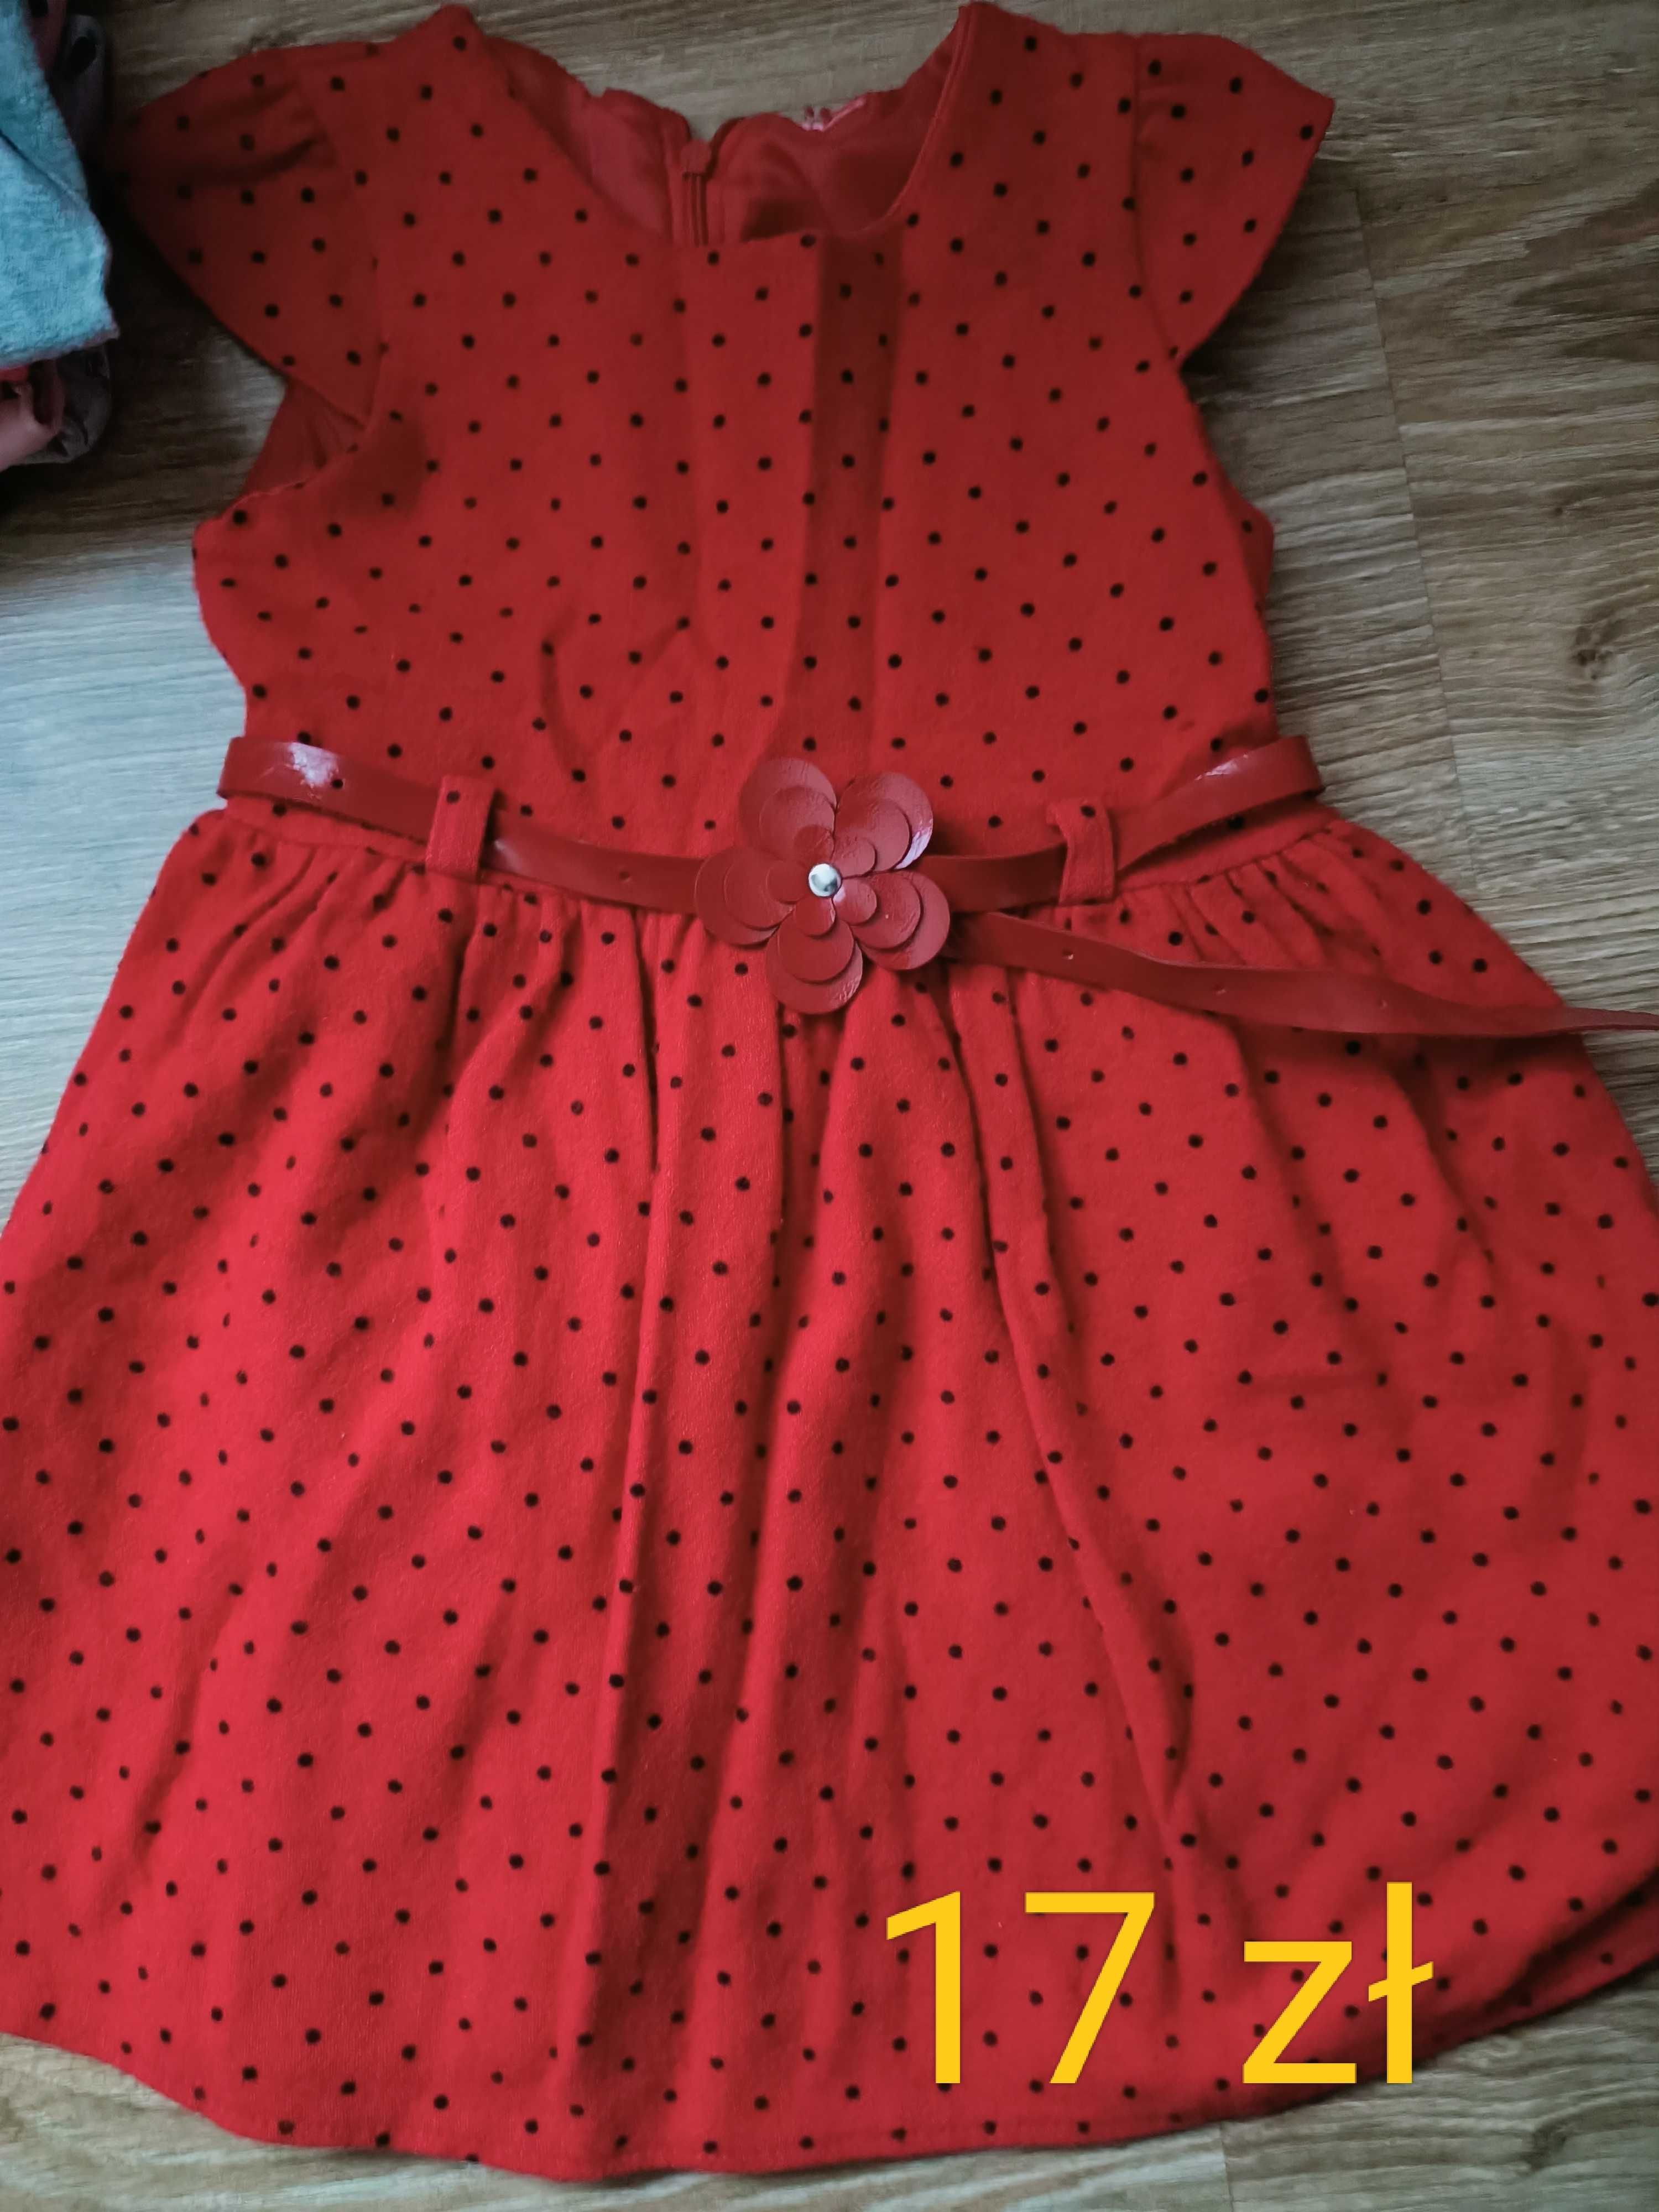 Czerwona sukienka dla dziewczynki